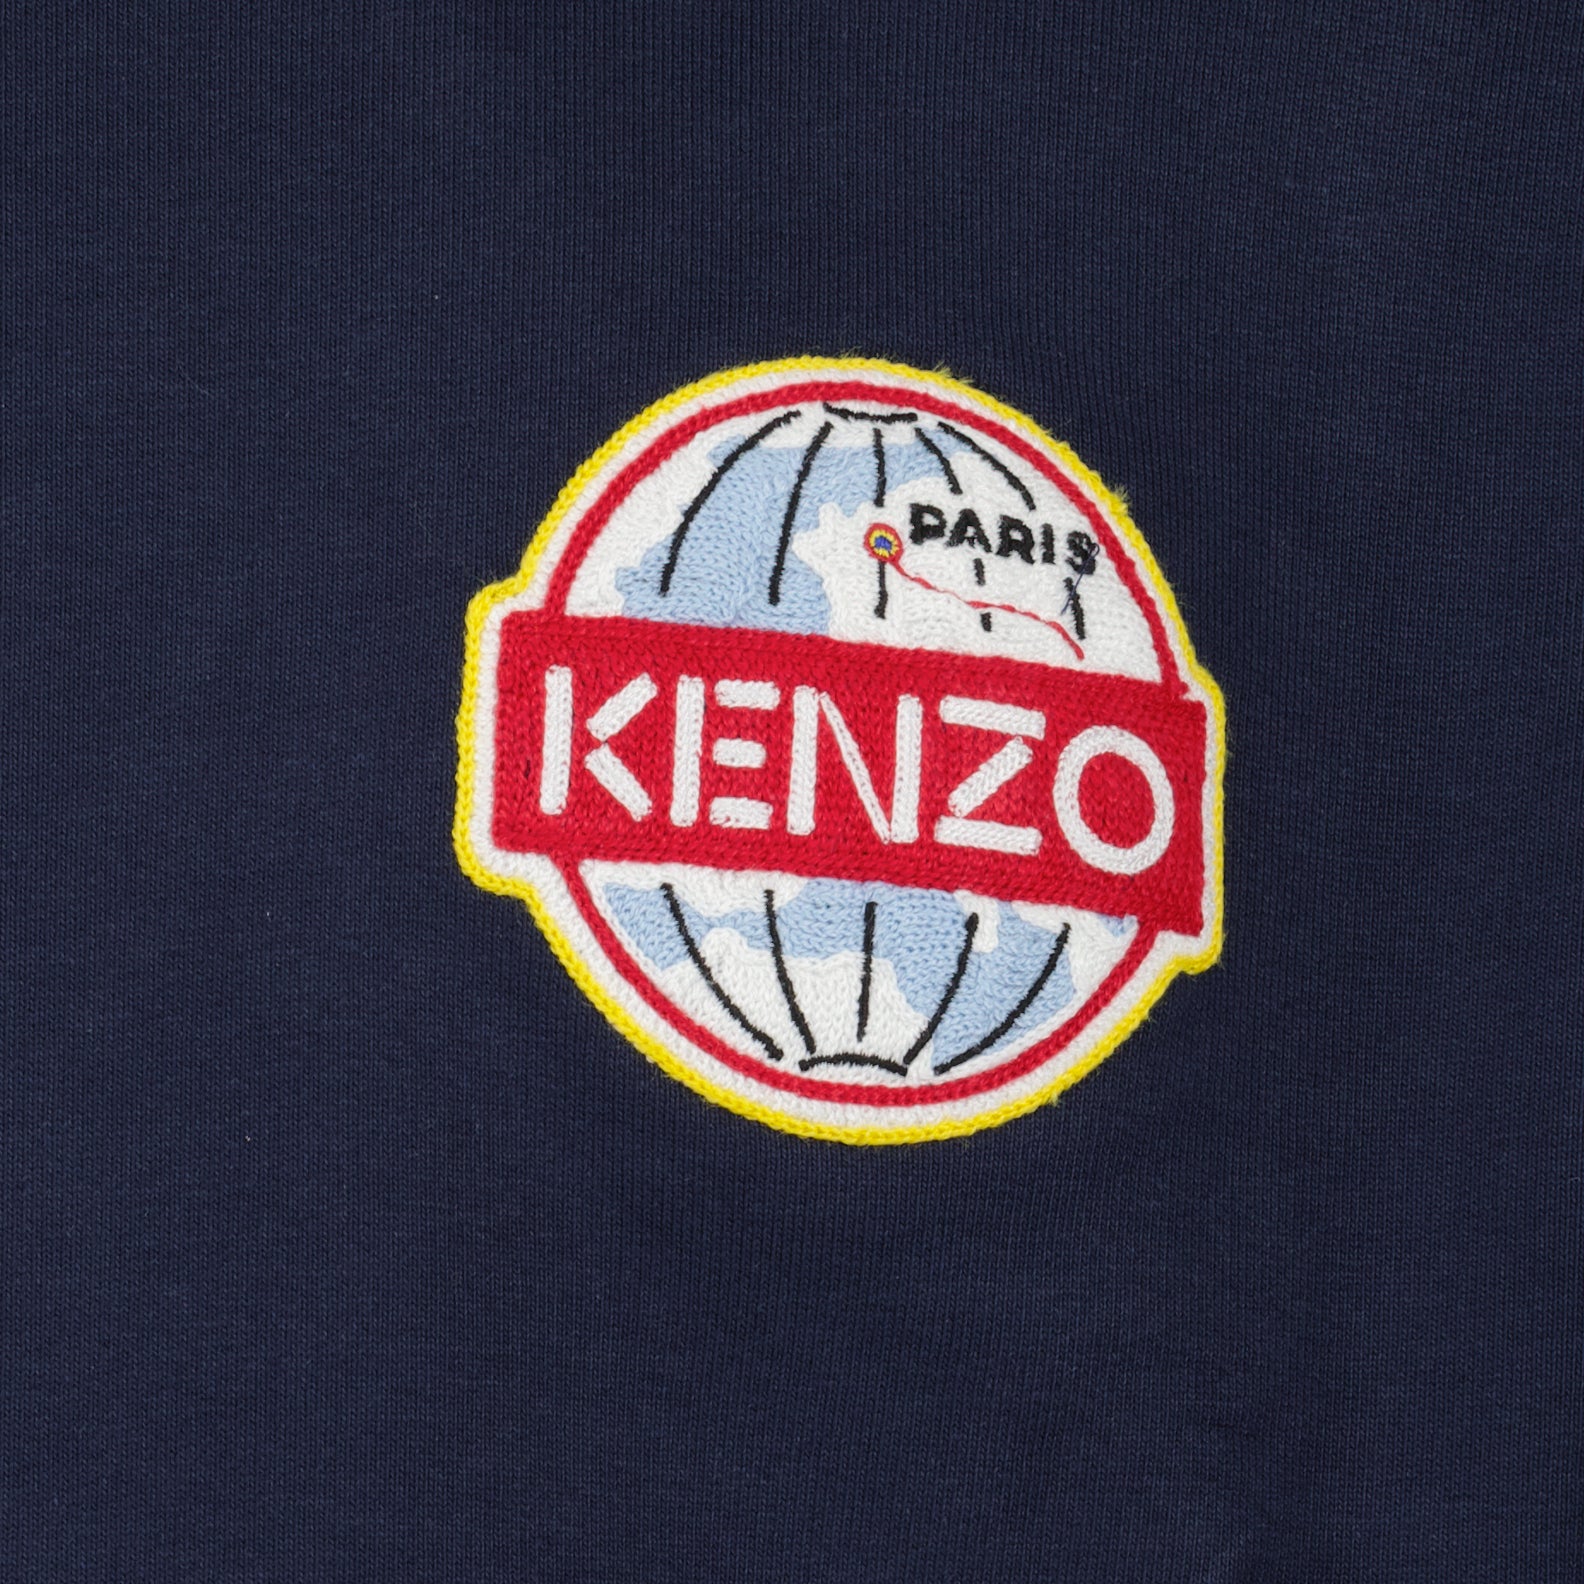 Kenzo Travel sweatshirt